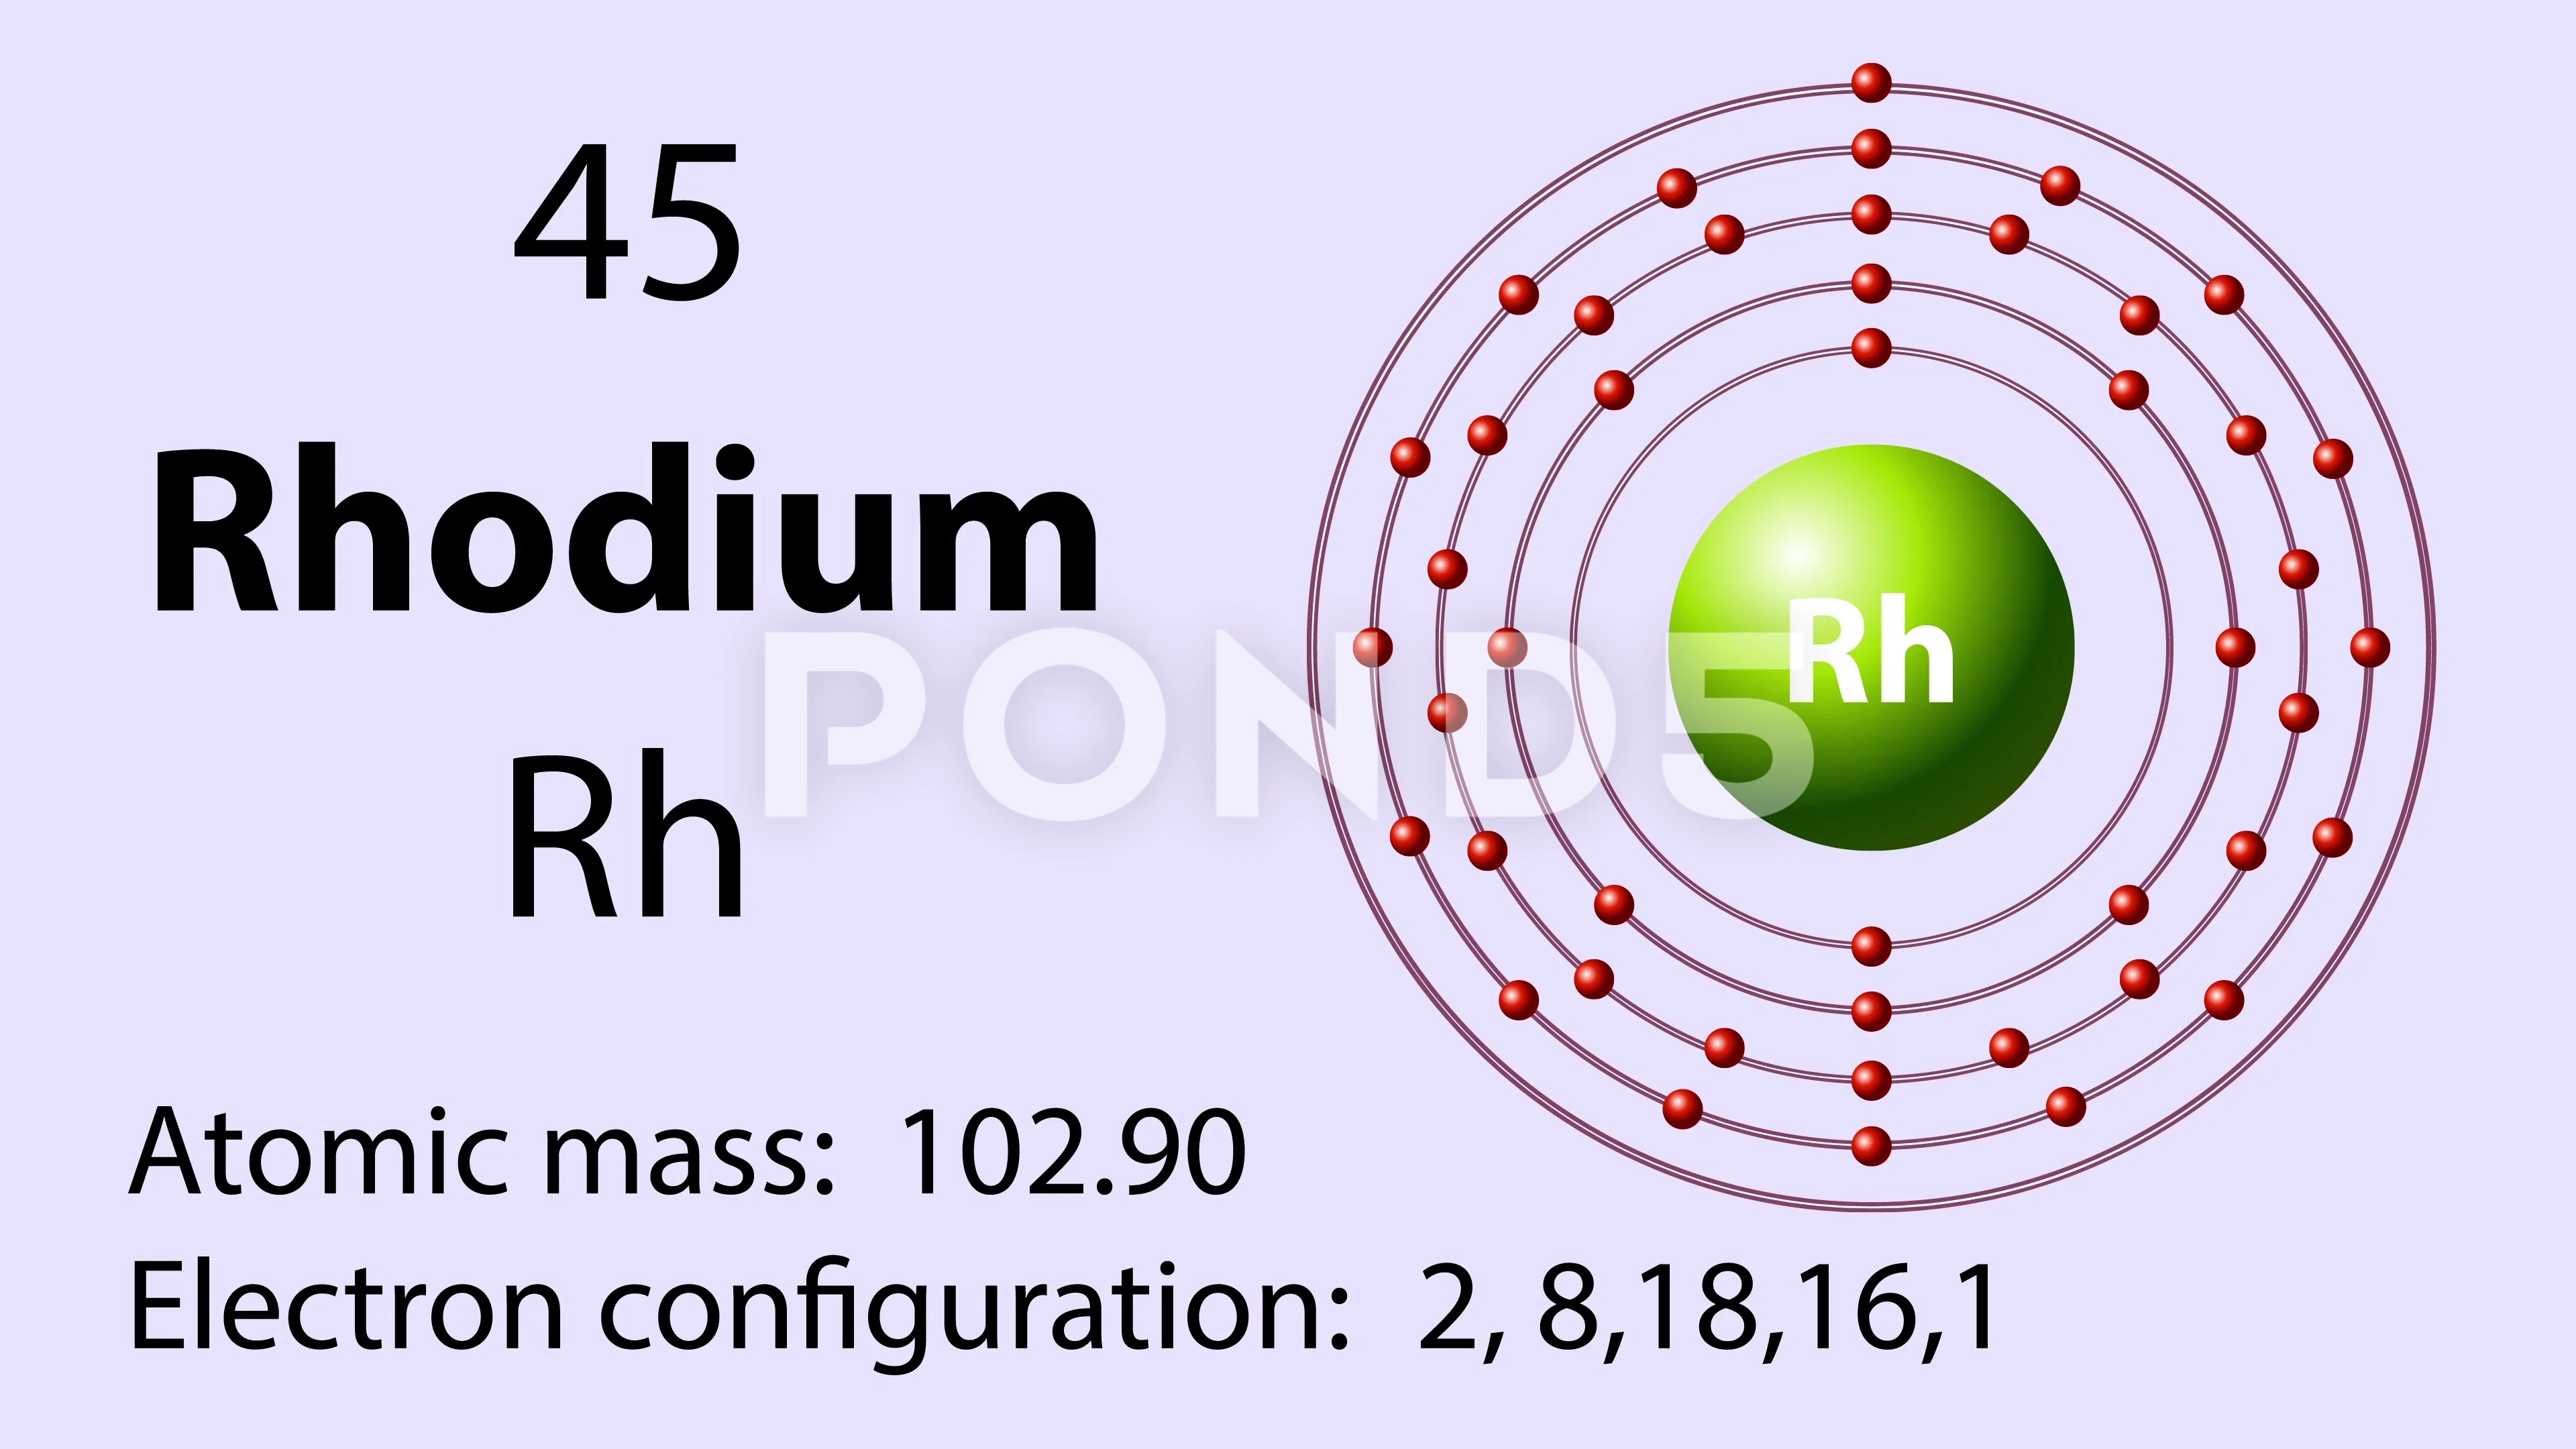 Rhodium Element